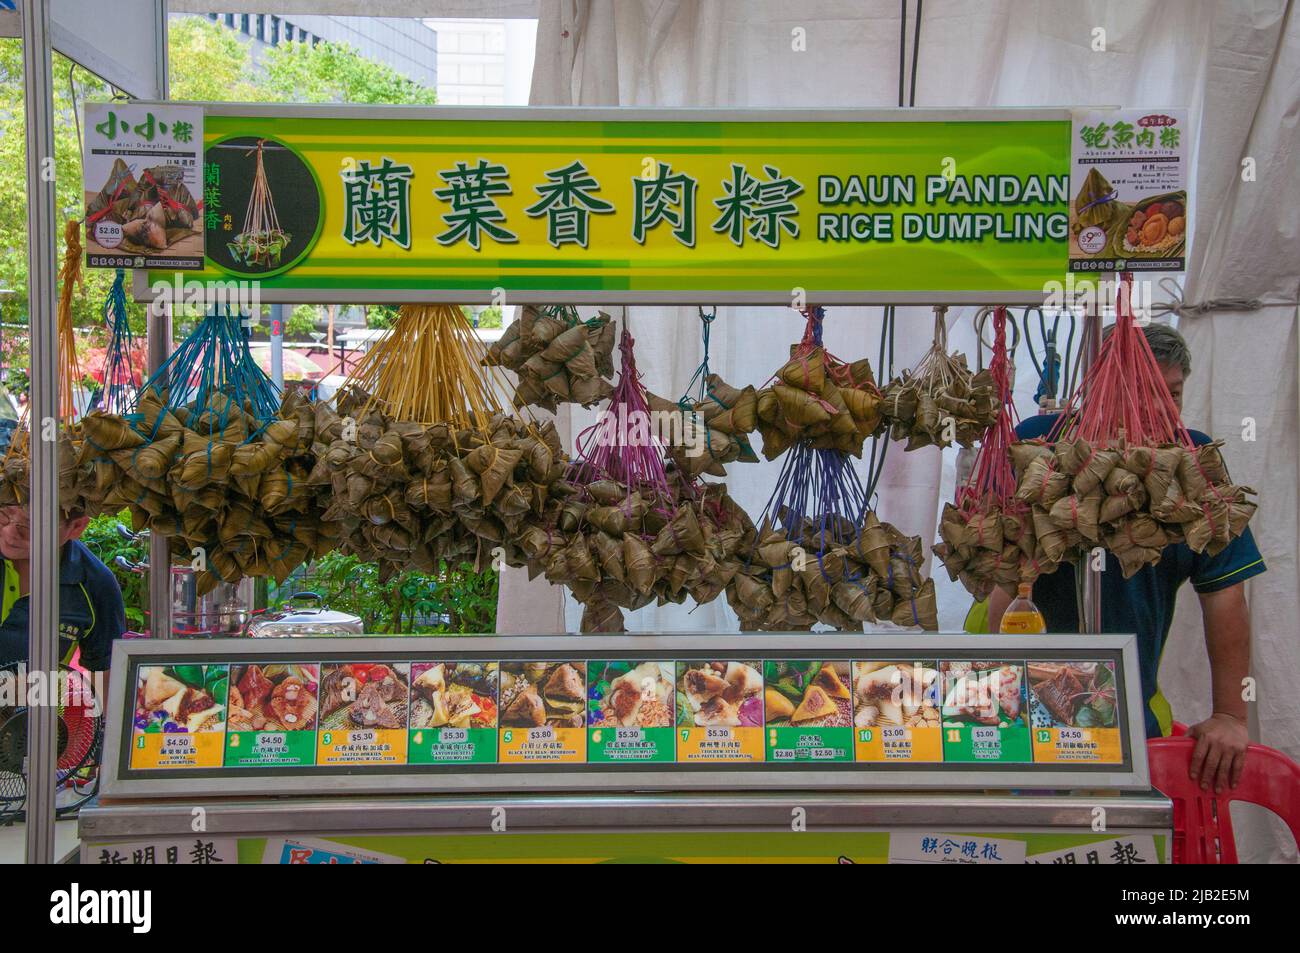 Daun pandan o appiccicoso (glutinoso) riso gnocchi spuntini in vendita presso una bancarella di falchi in Waterloo Street, Singapore Foto Stock